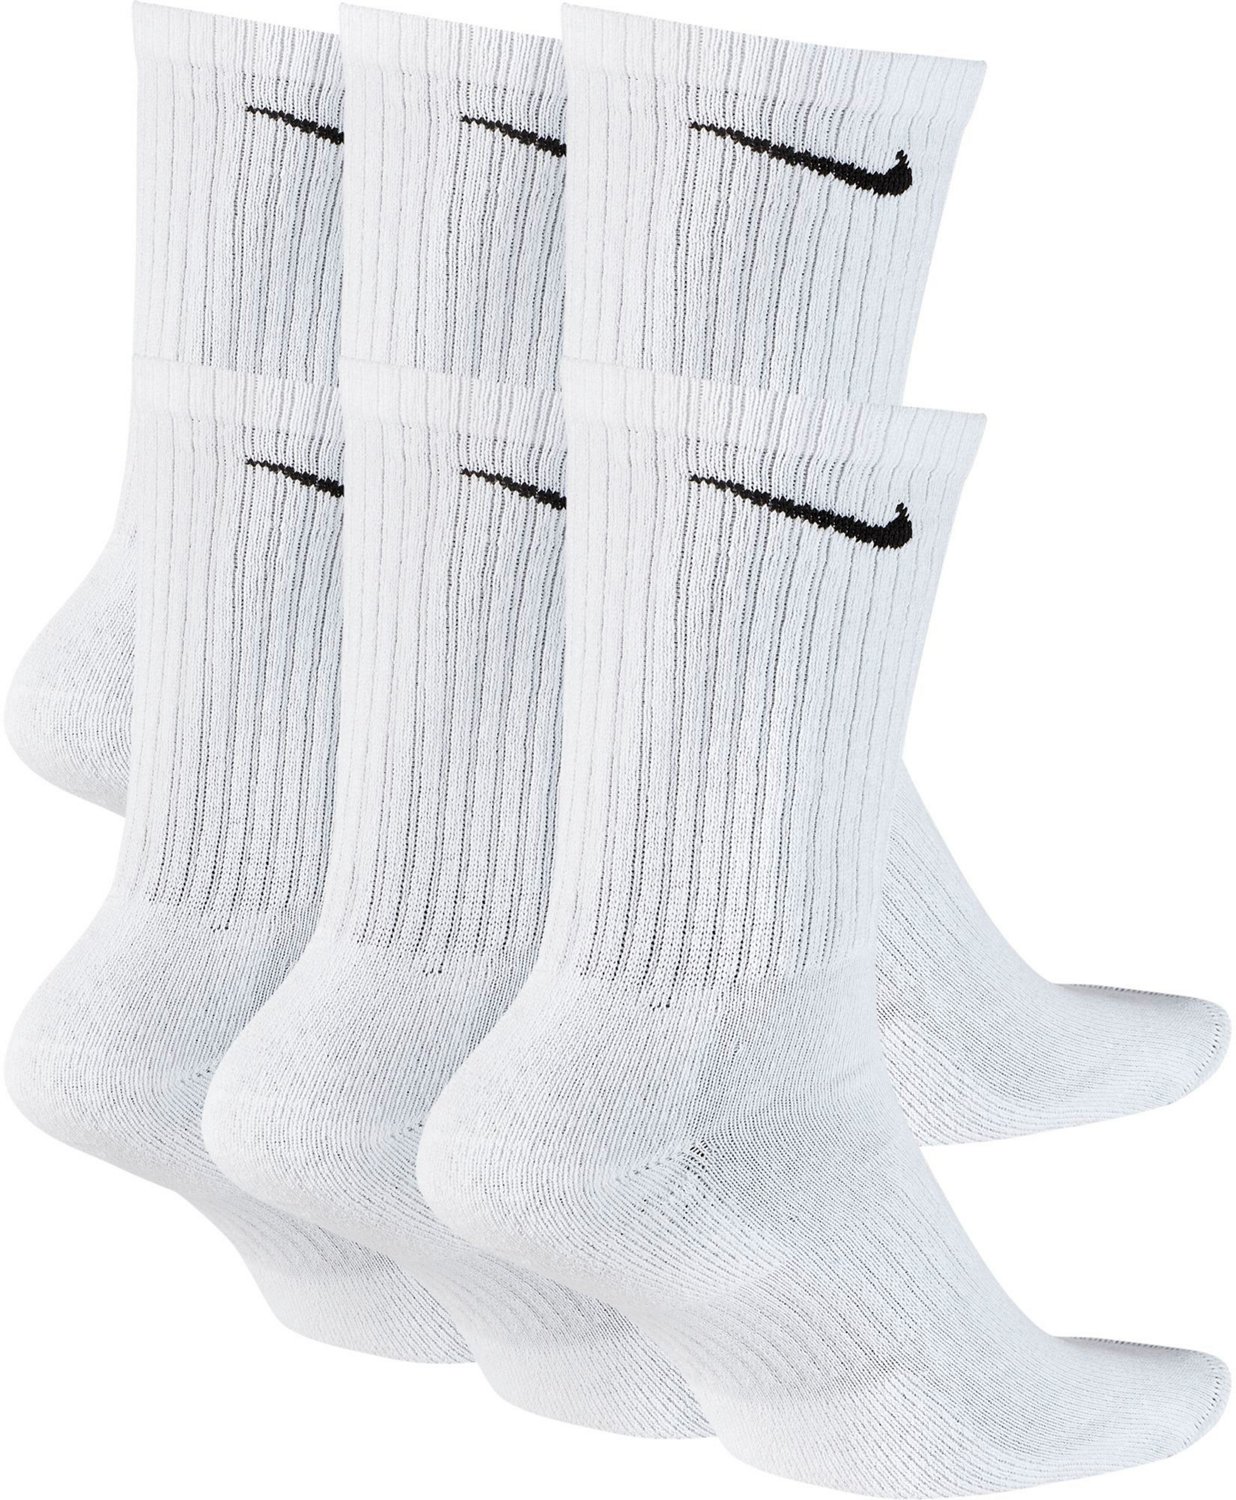 nike men's socks dri fit crew 6 pack